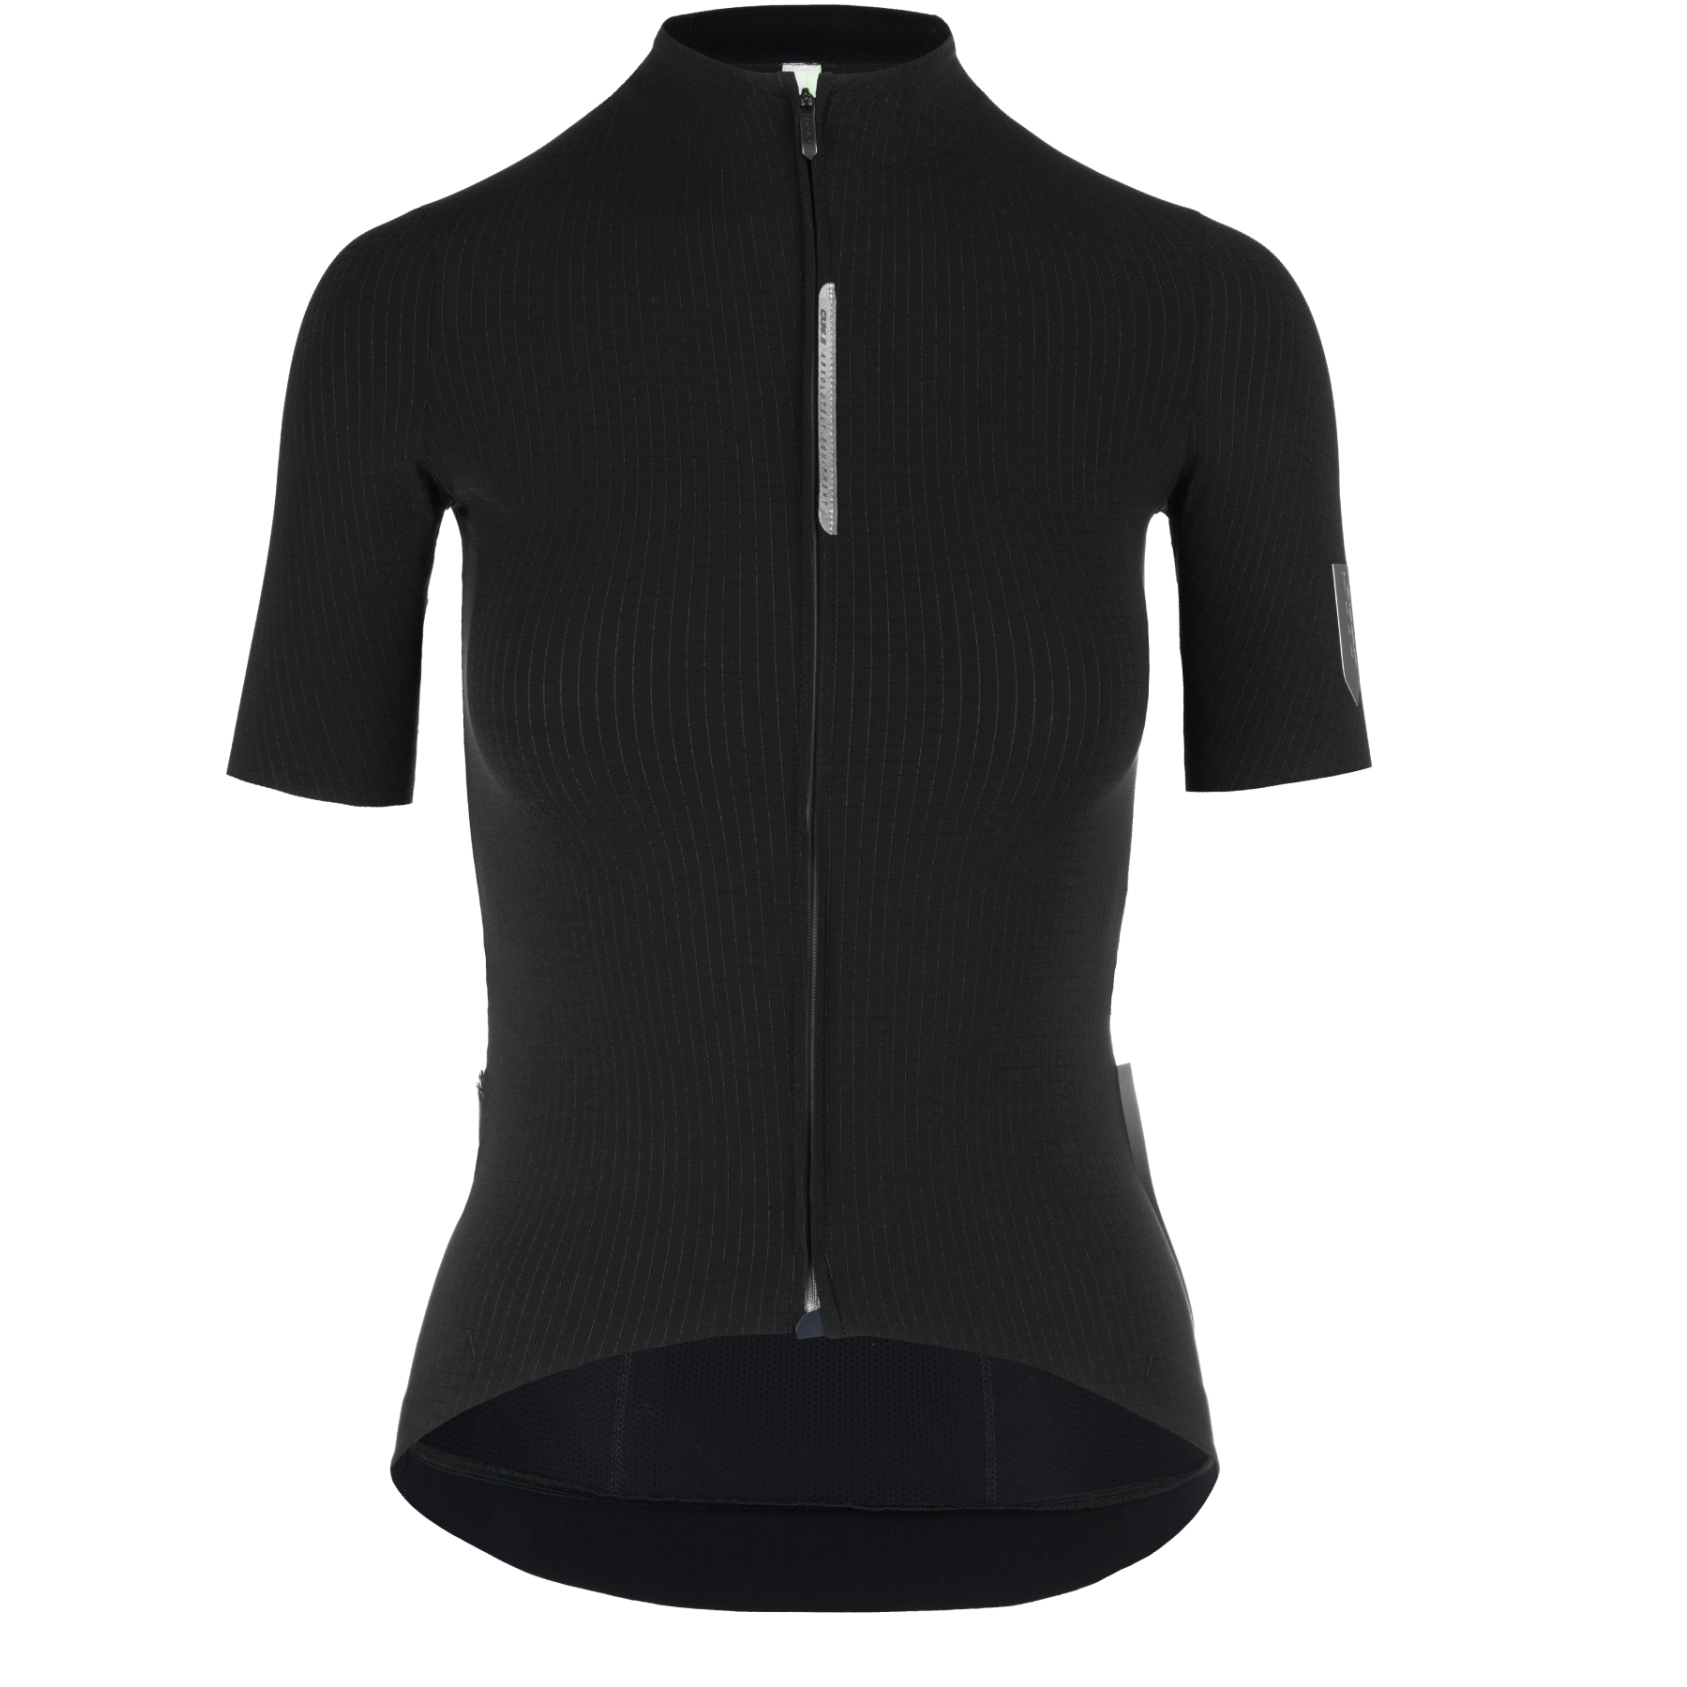 Productfoto van Q36.5 Pinstripe Pro Dames Fietsshirt met Korte Mouwen - zwart